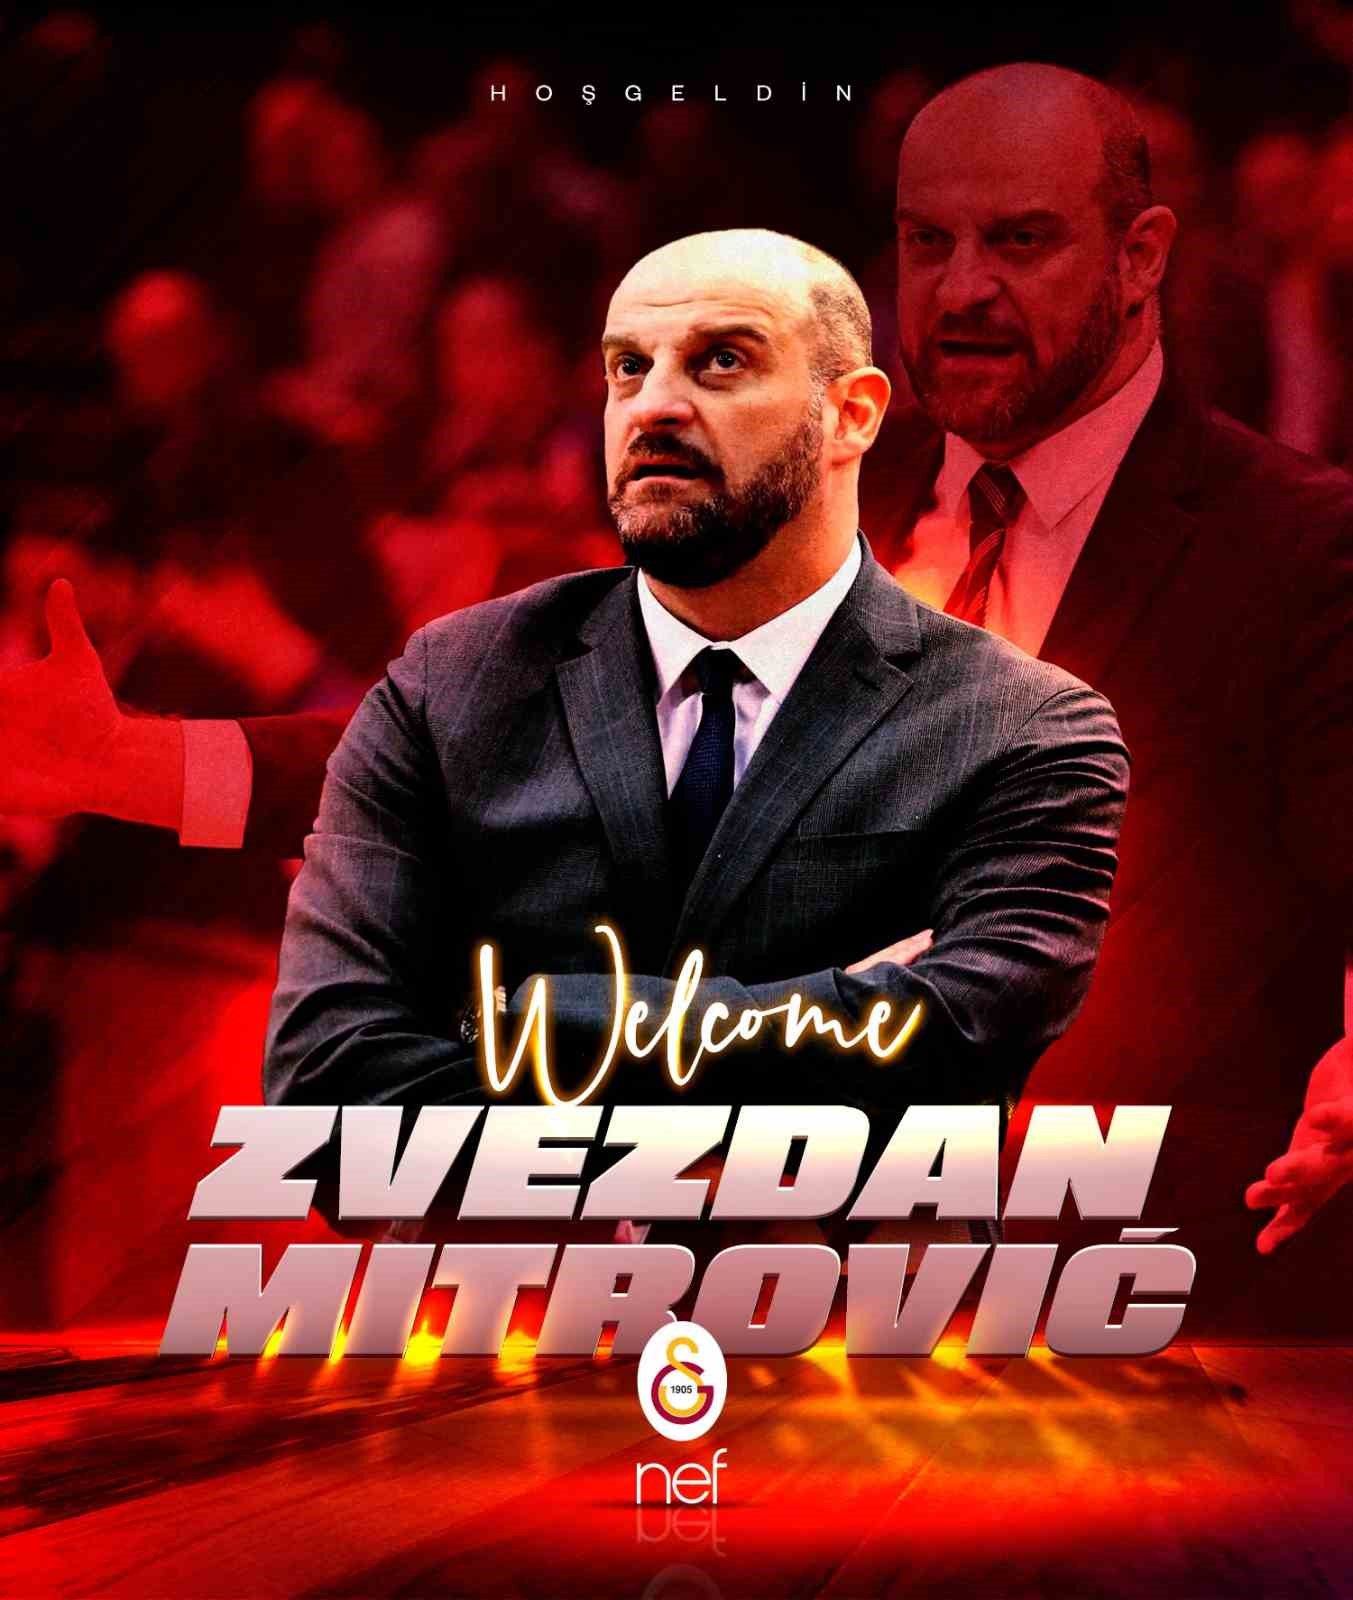 Galatasaray Nefin Yeni Başantrenörü Zvezdan Mitrovic Oldu Üç Hilal Tv